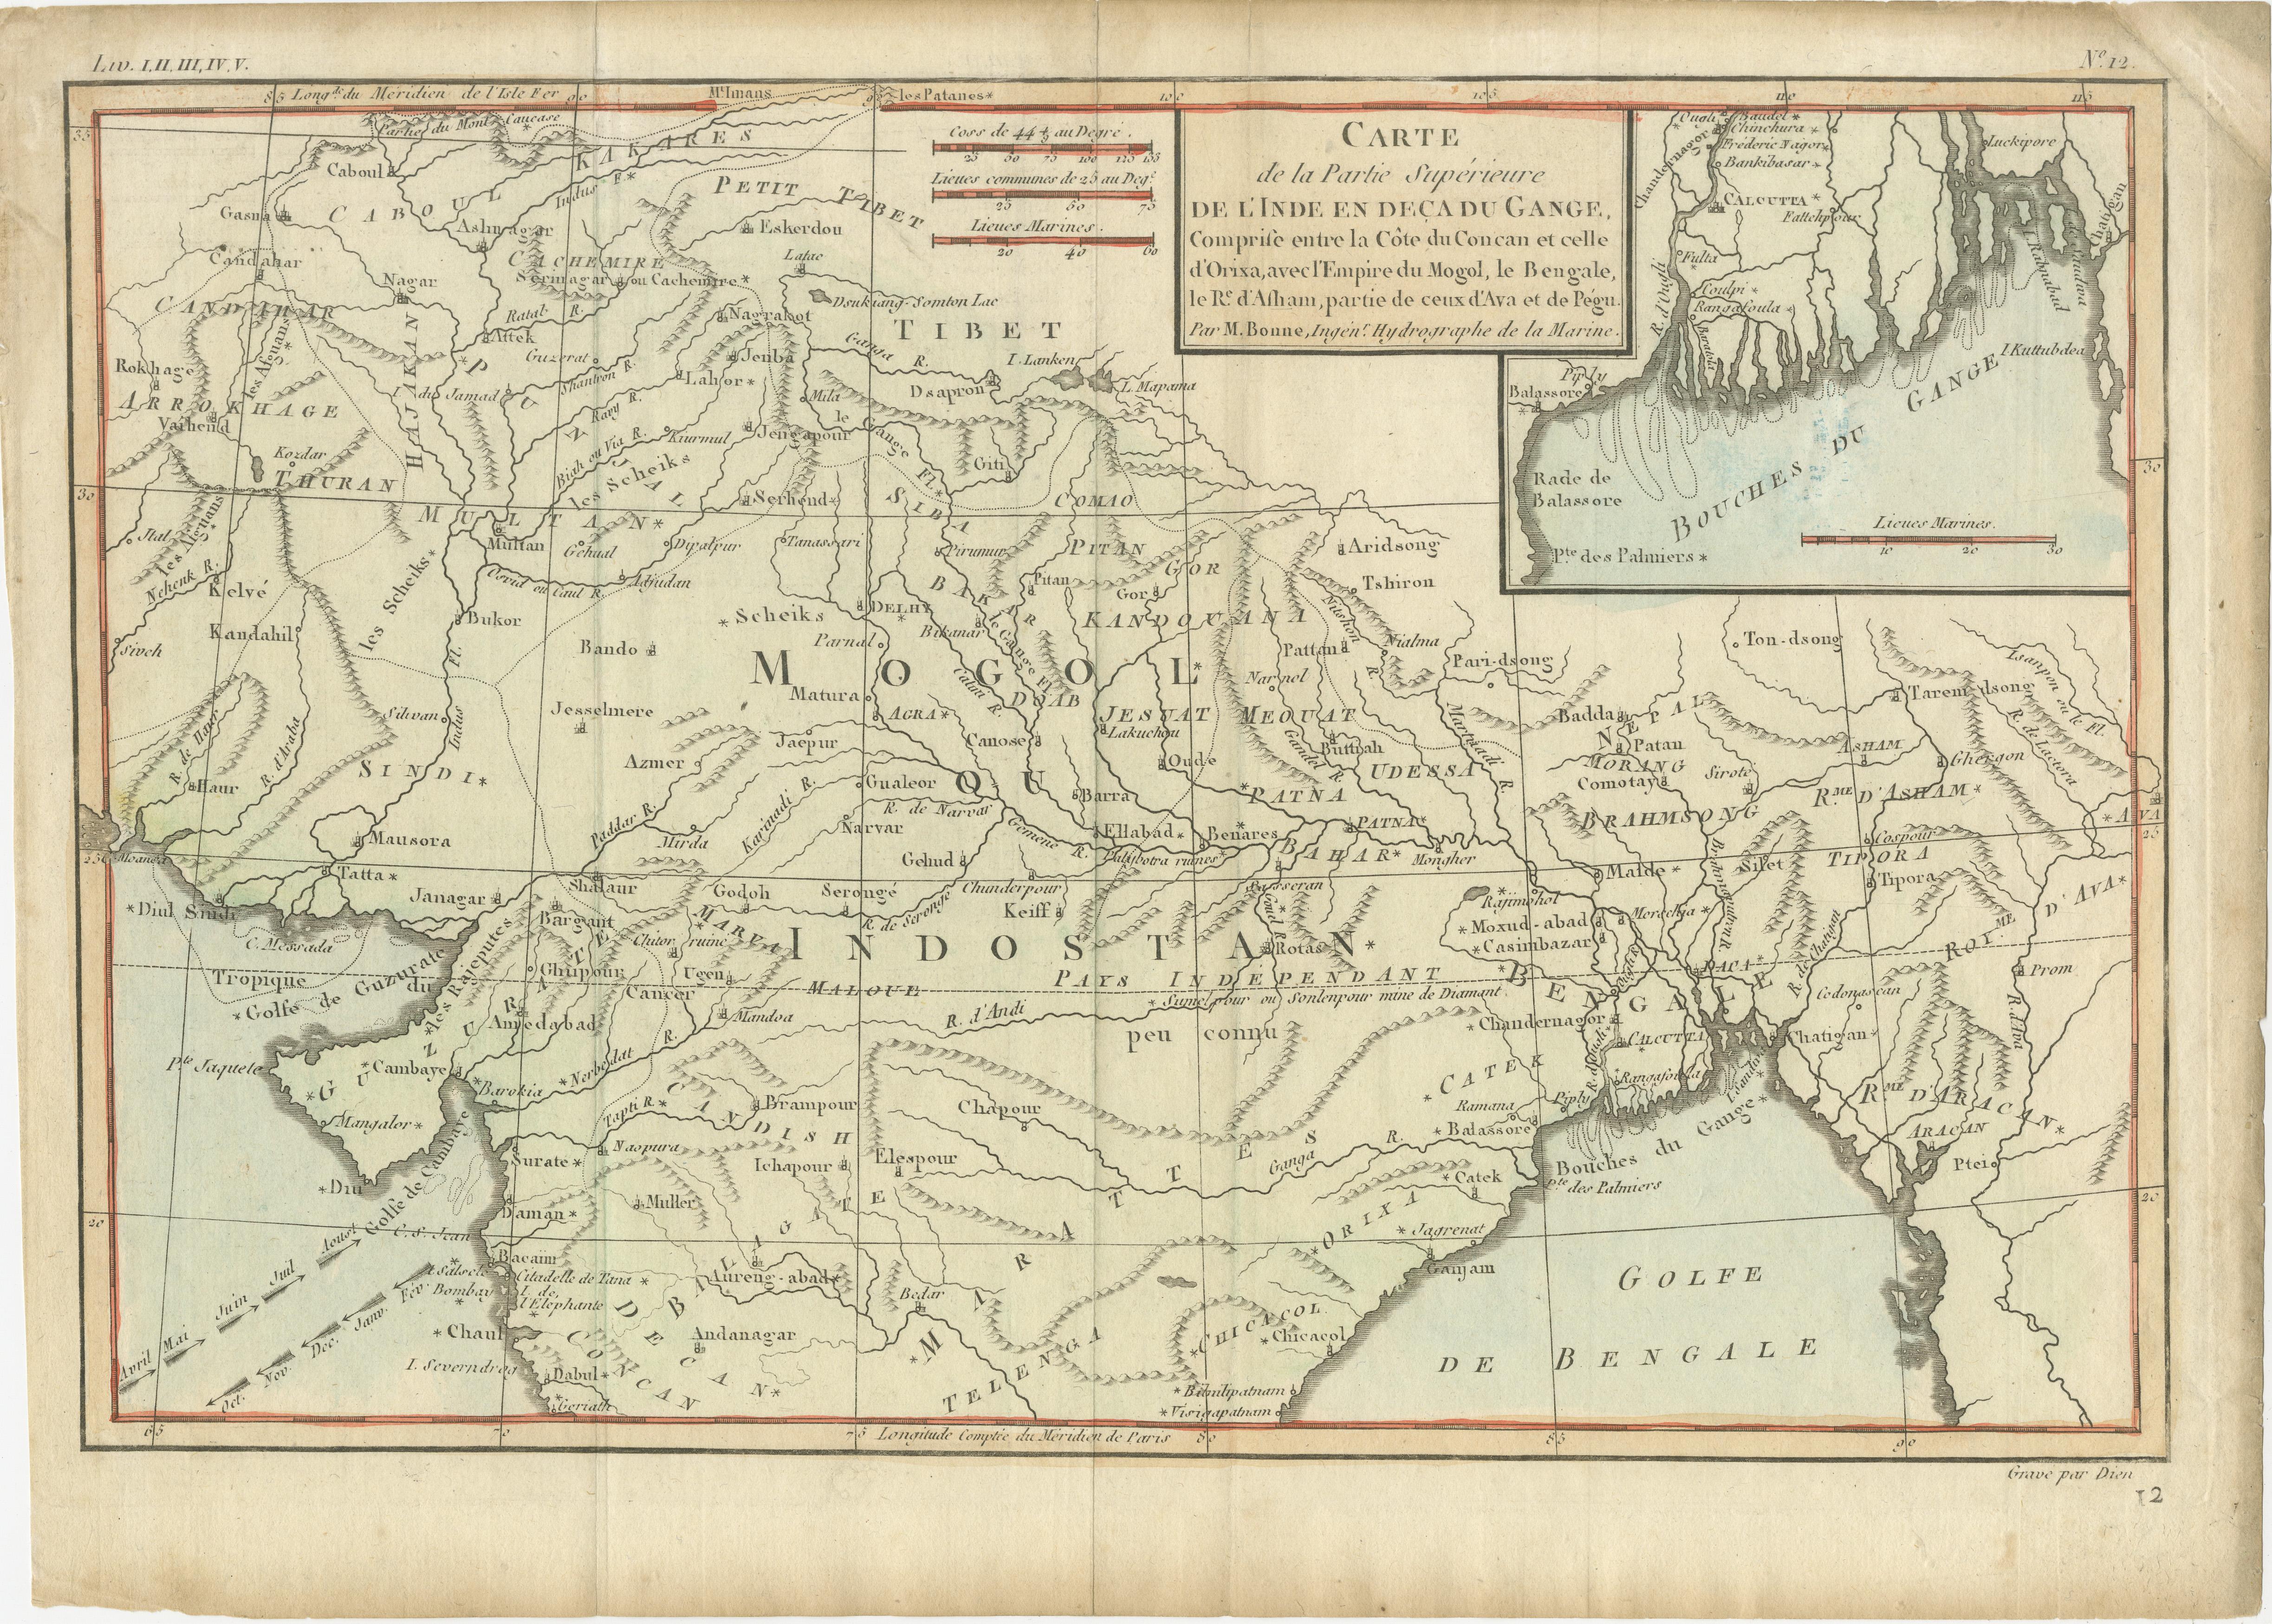 Antique map titled 'Carte de la Partie Superieure de l'Inde en deca du Gange. Comprise entre la Cote du Concan et celle d'Orixa, avec l'Empire du Mogol, le Bengale, le R. d'Asham, partie de ceux d'Ava et de Pegu.' This map shows a part of Asia, with